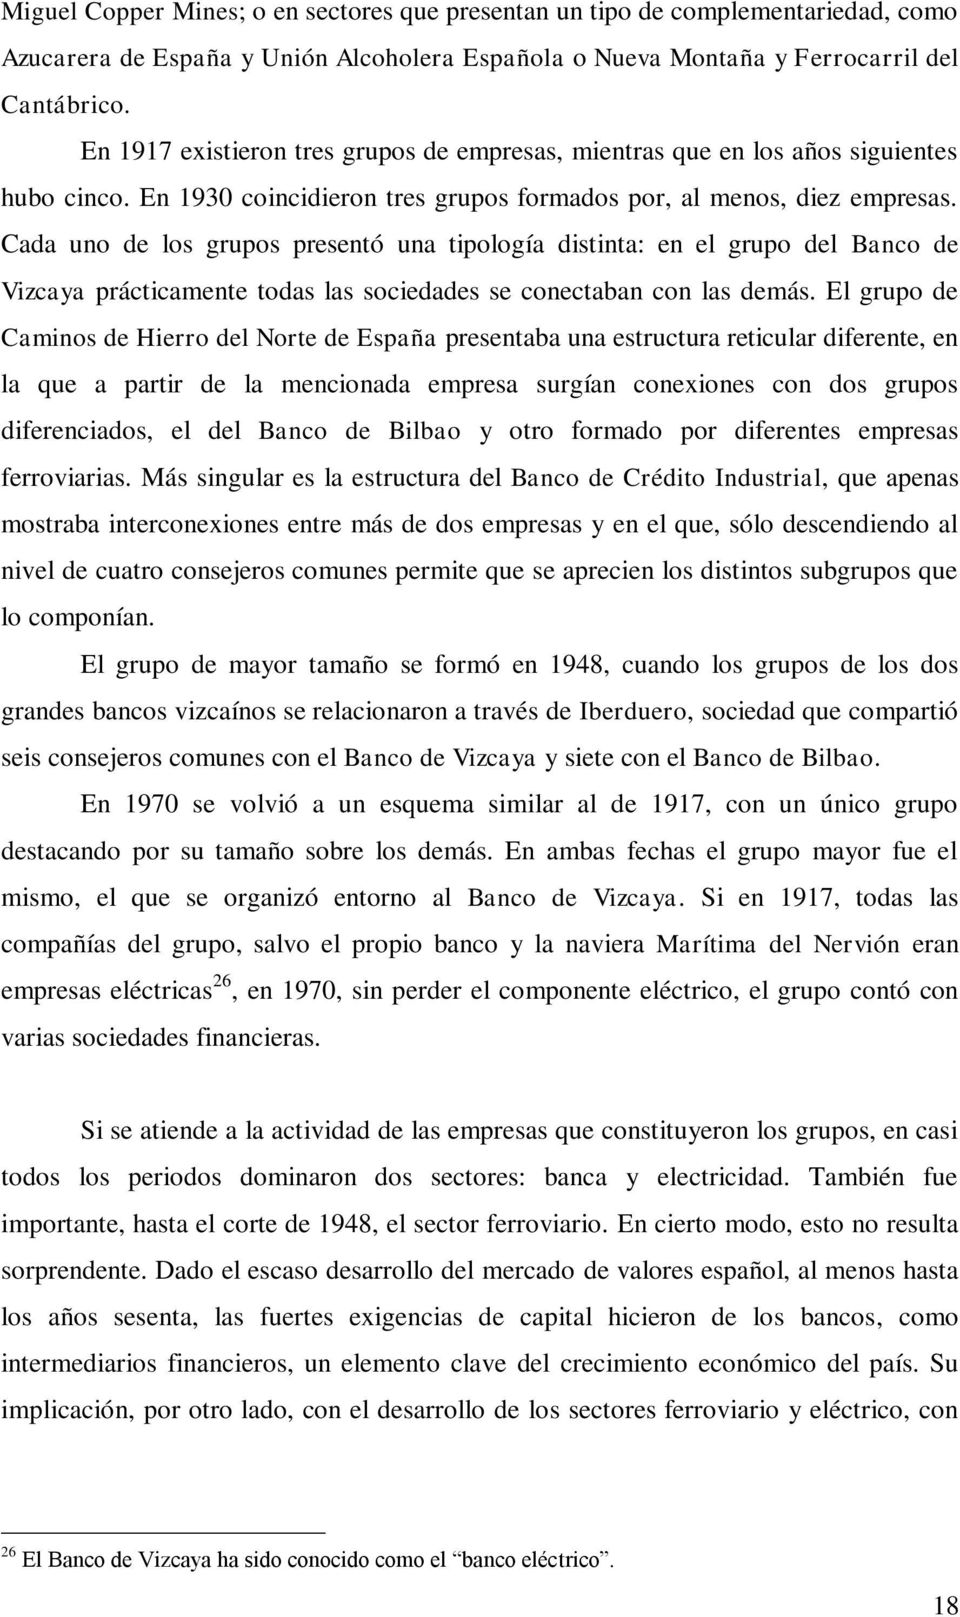 Cada uno de los grupos presentó una tipología distinta: en el grupo del Banco de Vizcaya prácticamente todas las sociedades se conectaban con las demás.